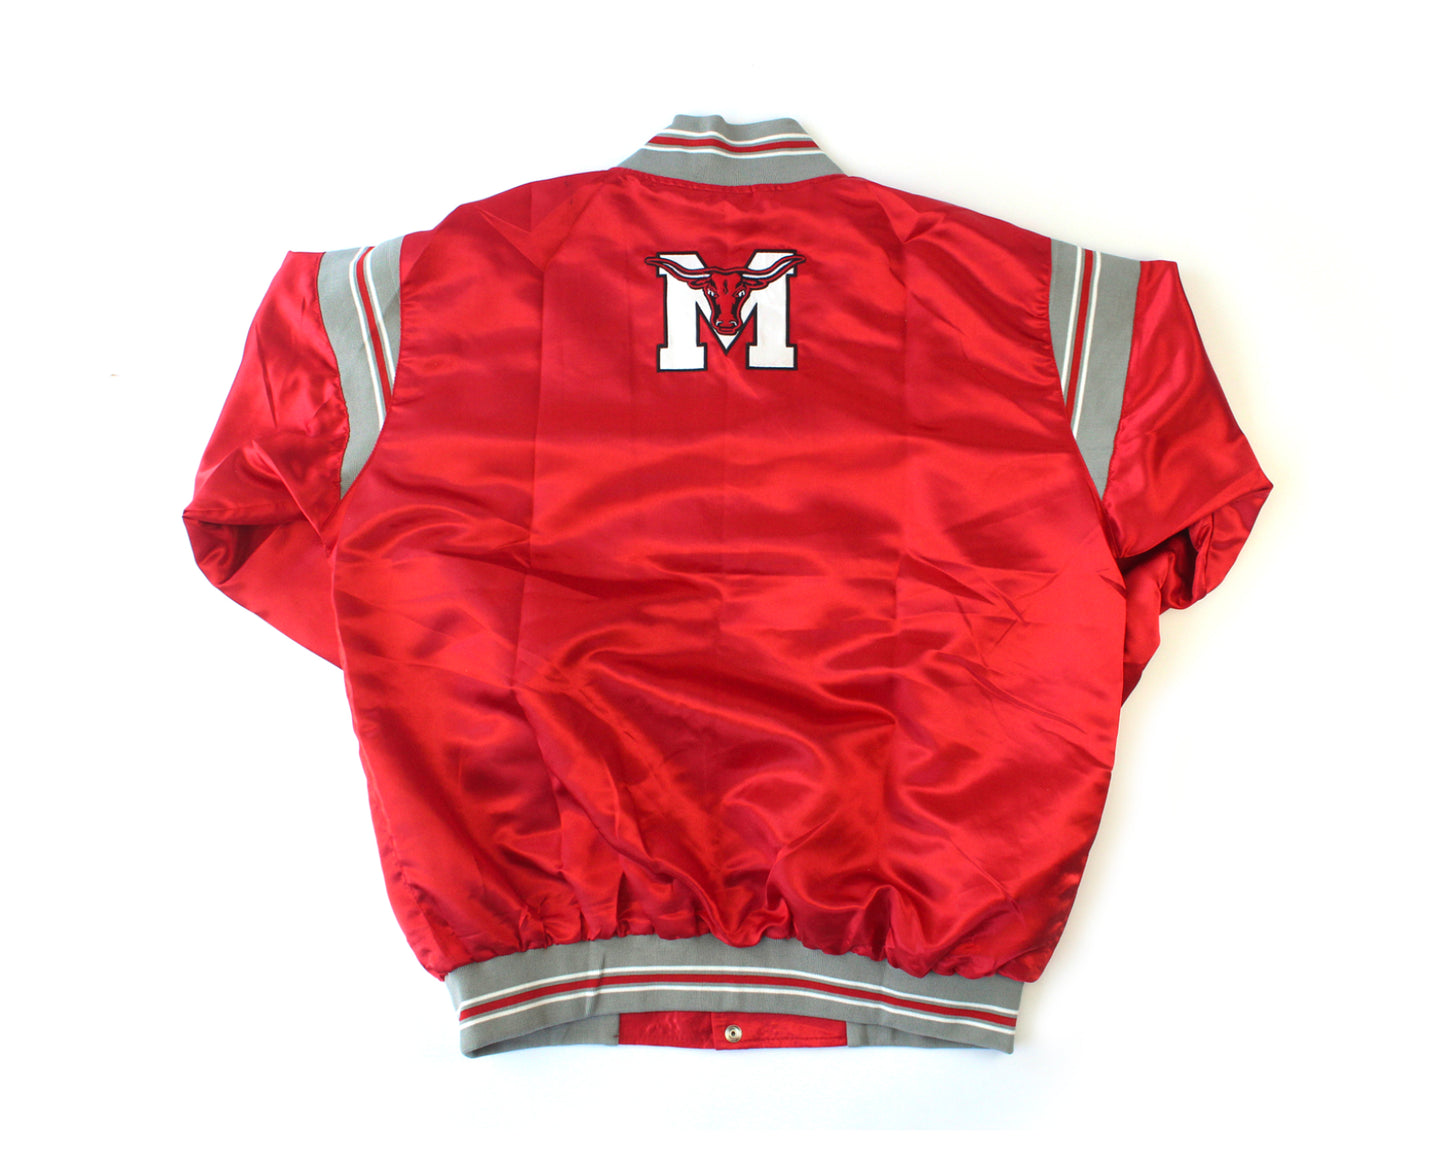 Marshall Mavericks Jacket (Pre-Order)